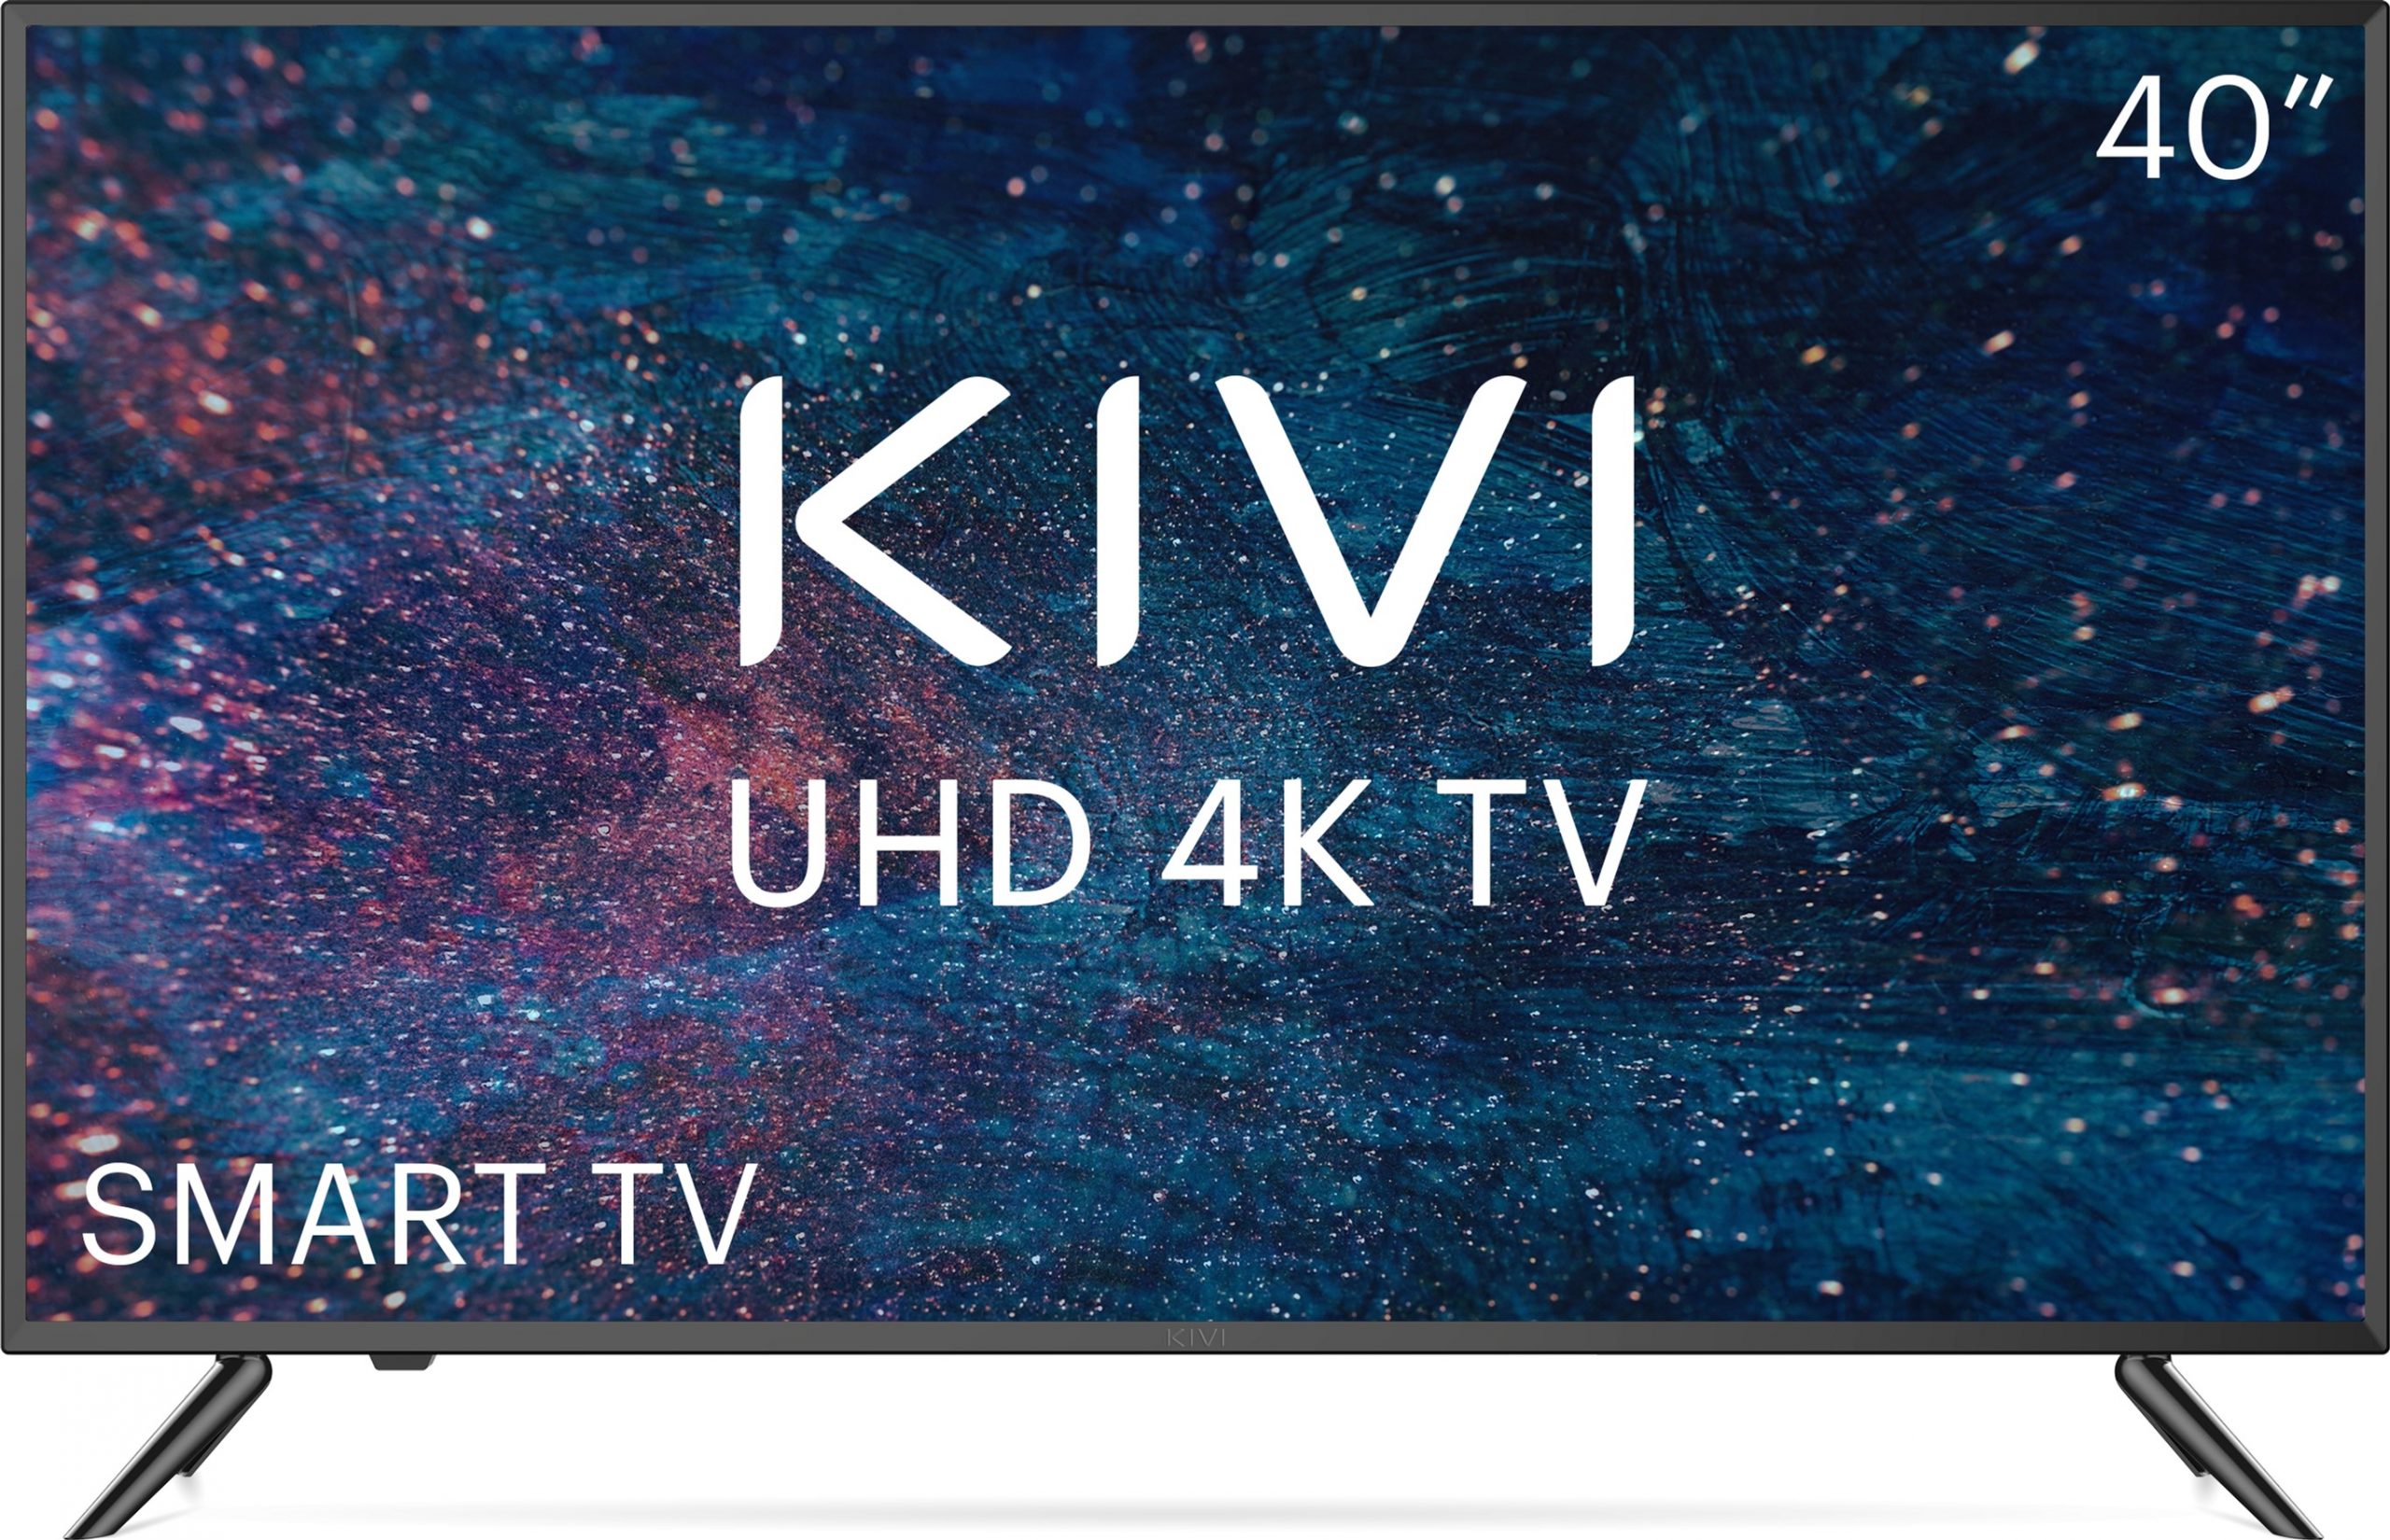 Телевизор KIVI 40U600KD